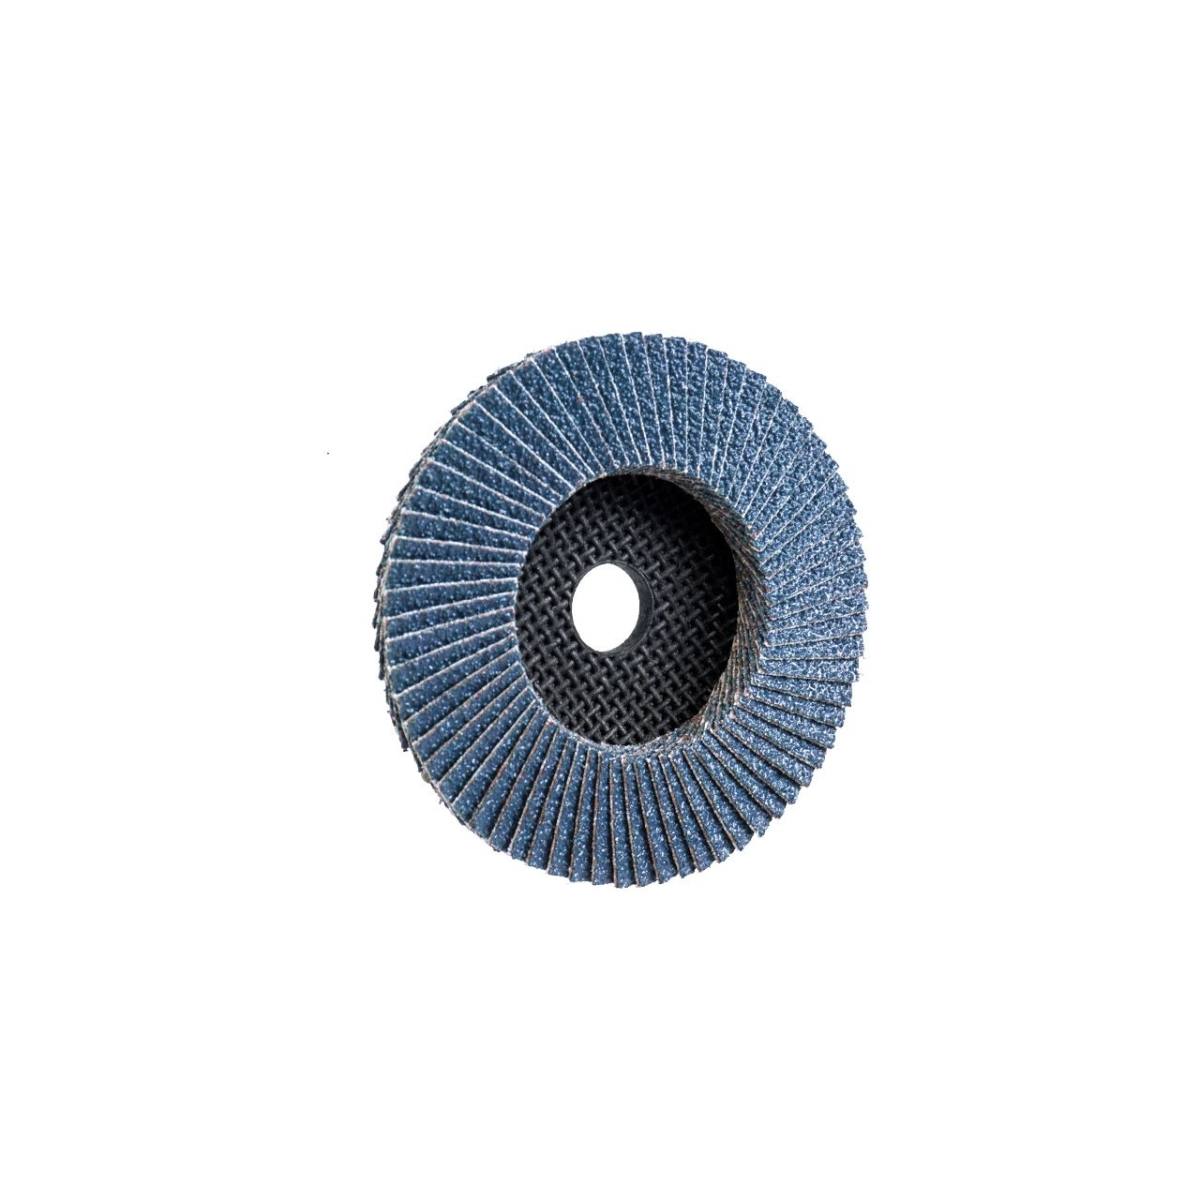 TRIMFIX ZIRCOPUR, 100 mm x 15.2 mm, grit 40, flap disc